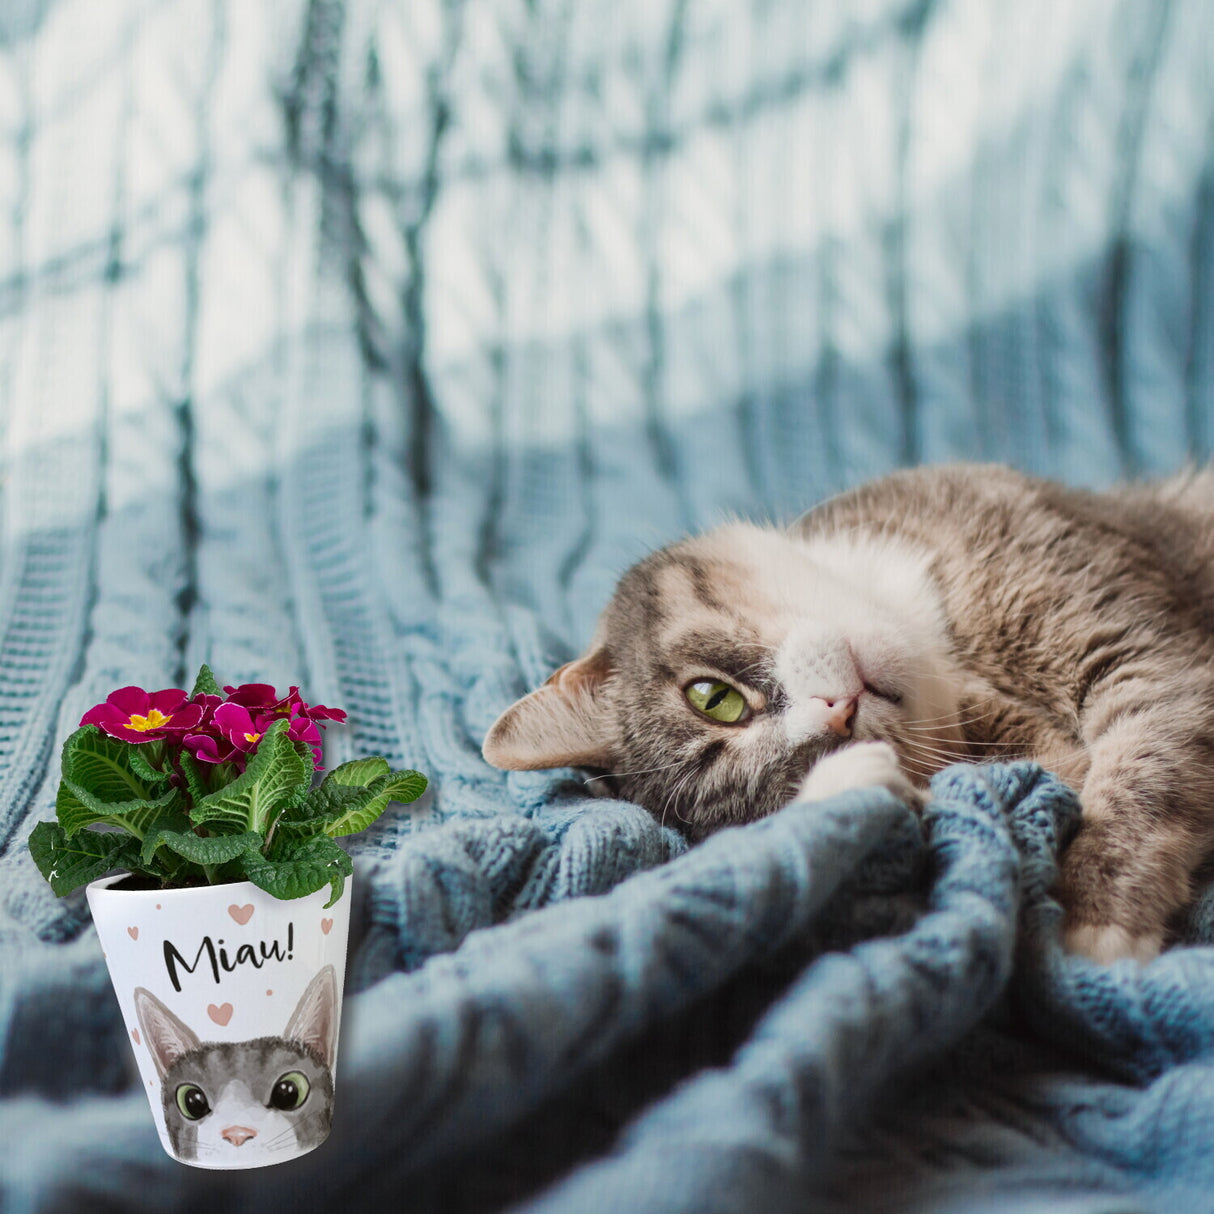 Miau Katze Blumentopf